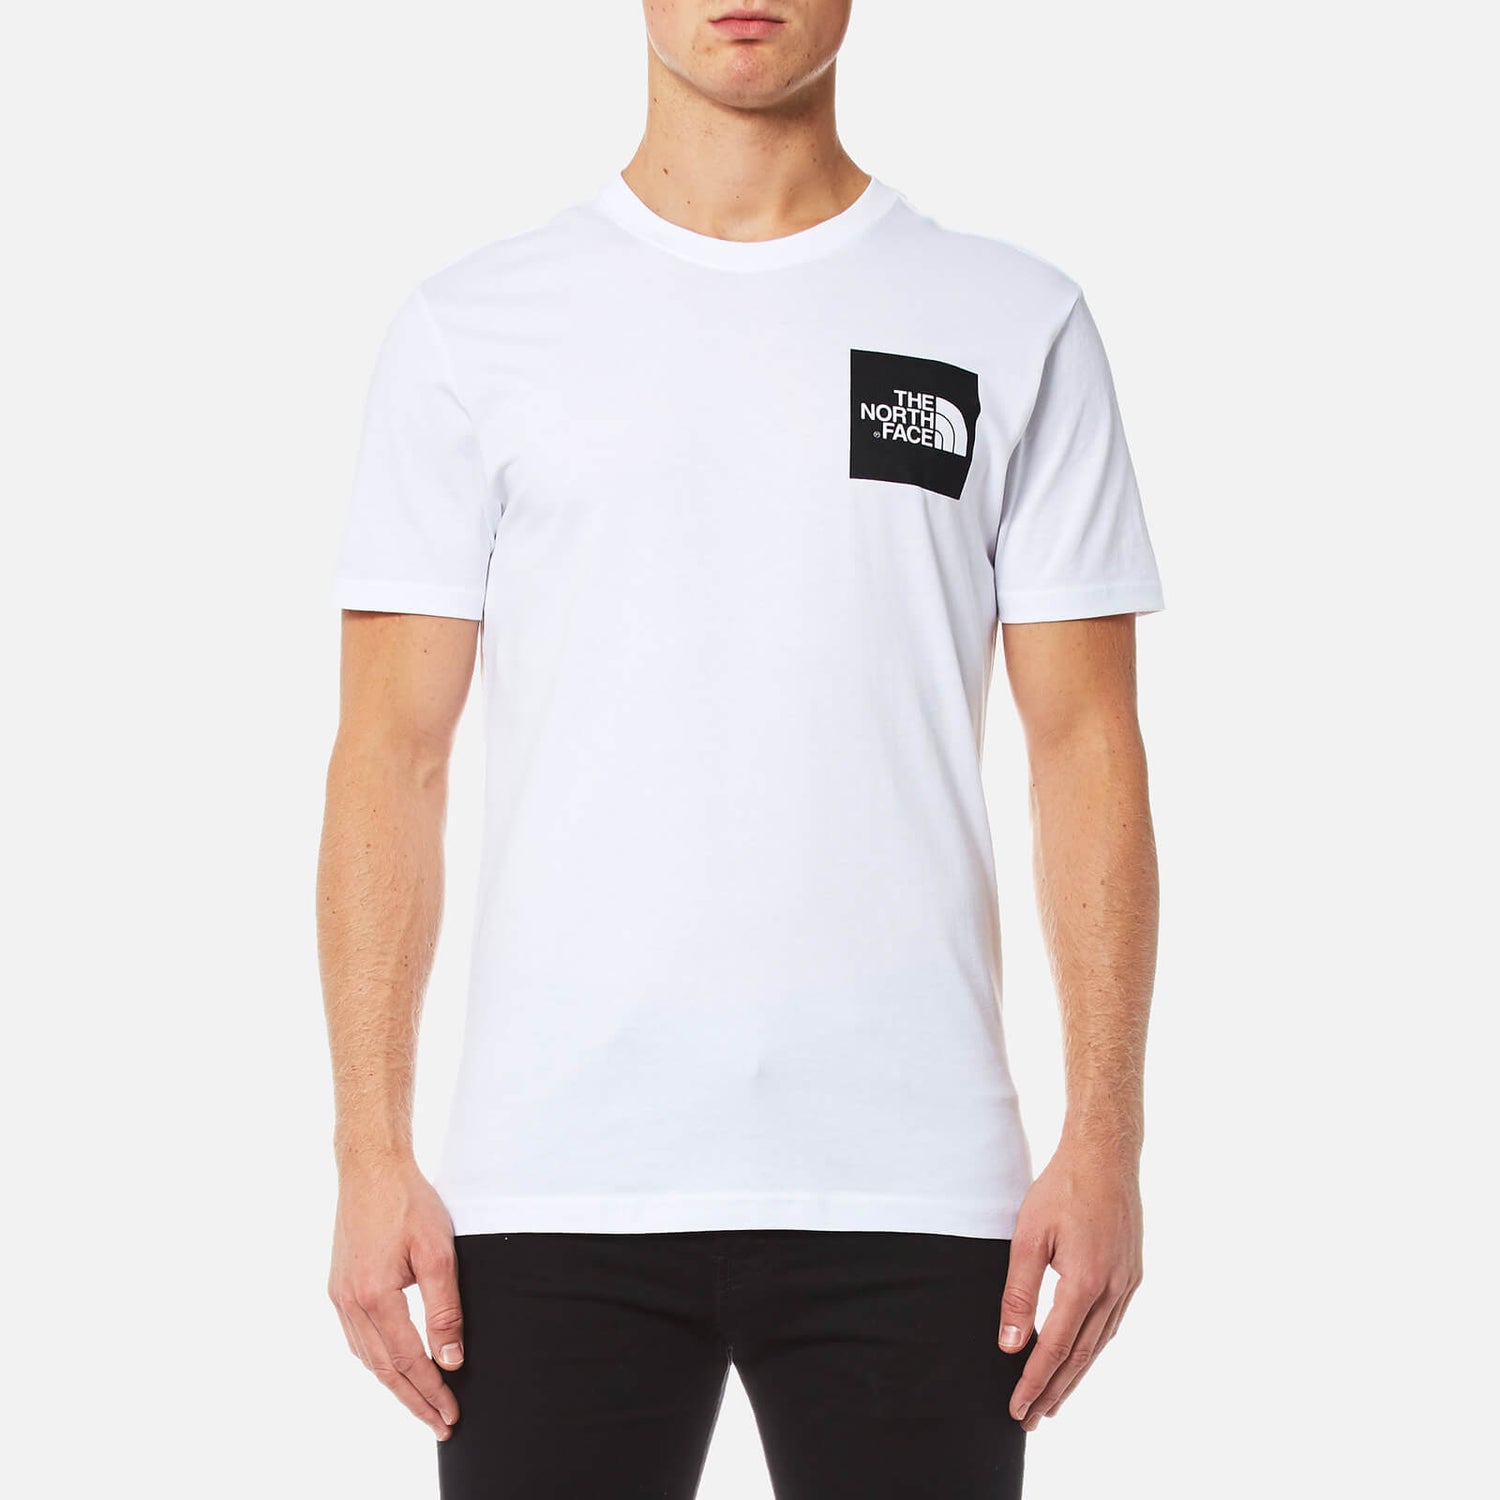 The North Face Men's Short Sleeve Fine T-Shirt - TNF White/TNF Black - S